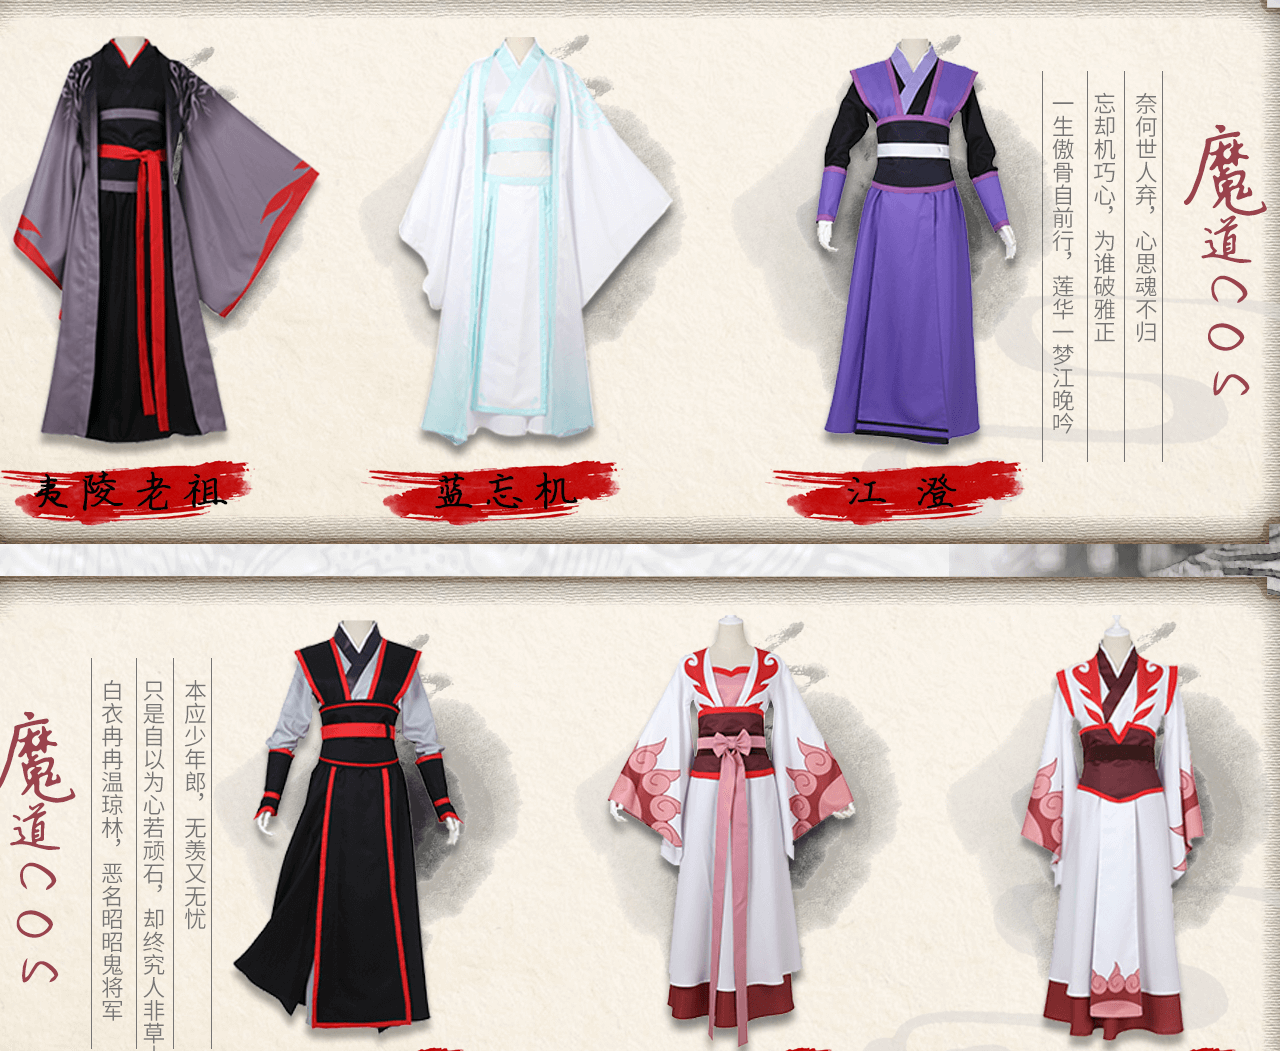 Đặt hàng phụ kiện, trang phục cosplay cao cấp trên Taobao Tmall